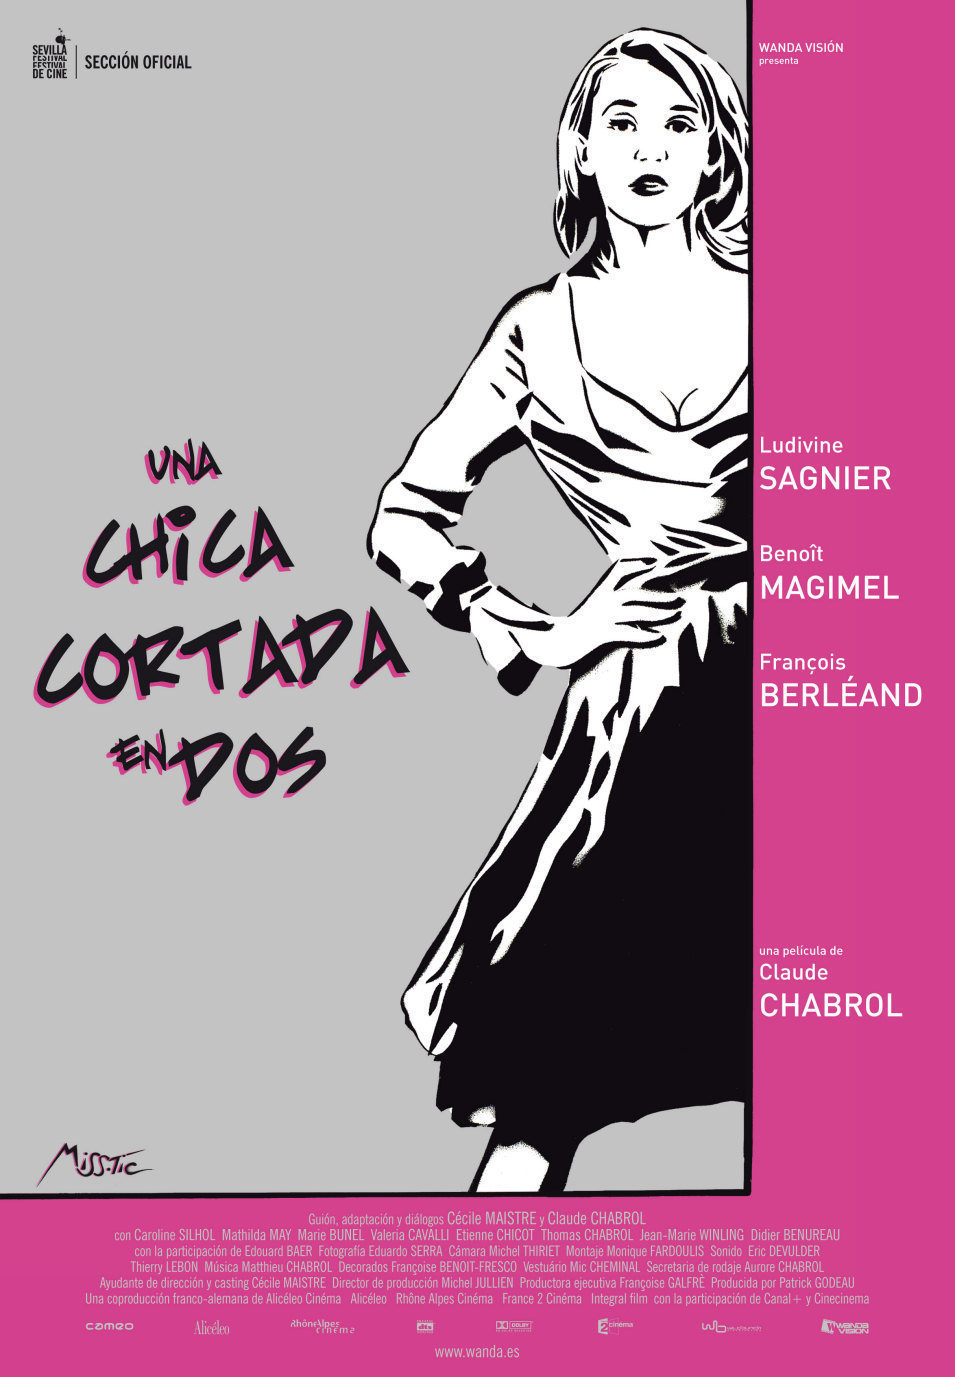 Cartel de Una chica cortada en dos - España